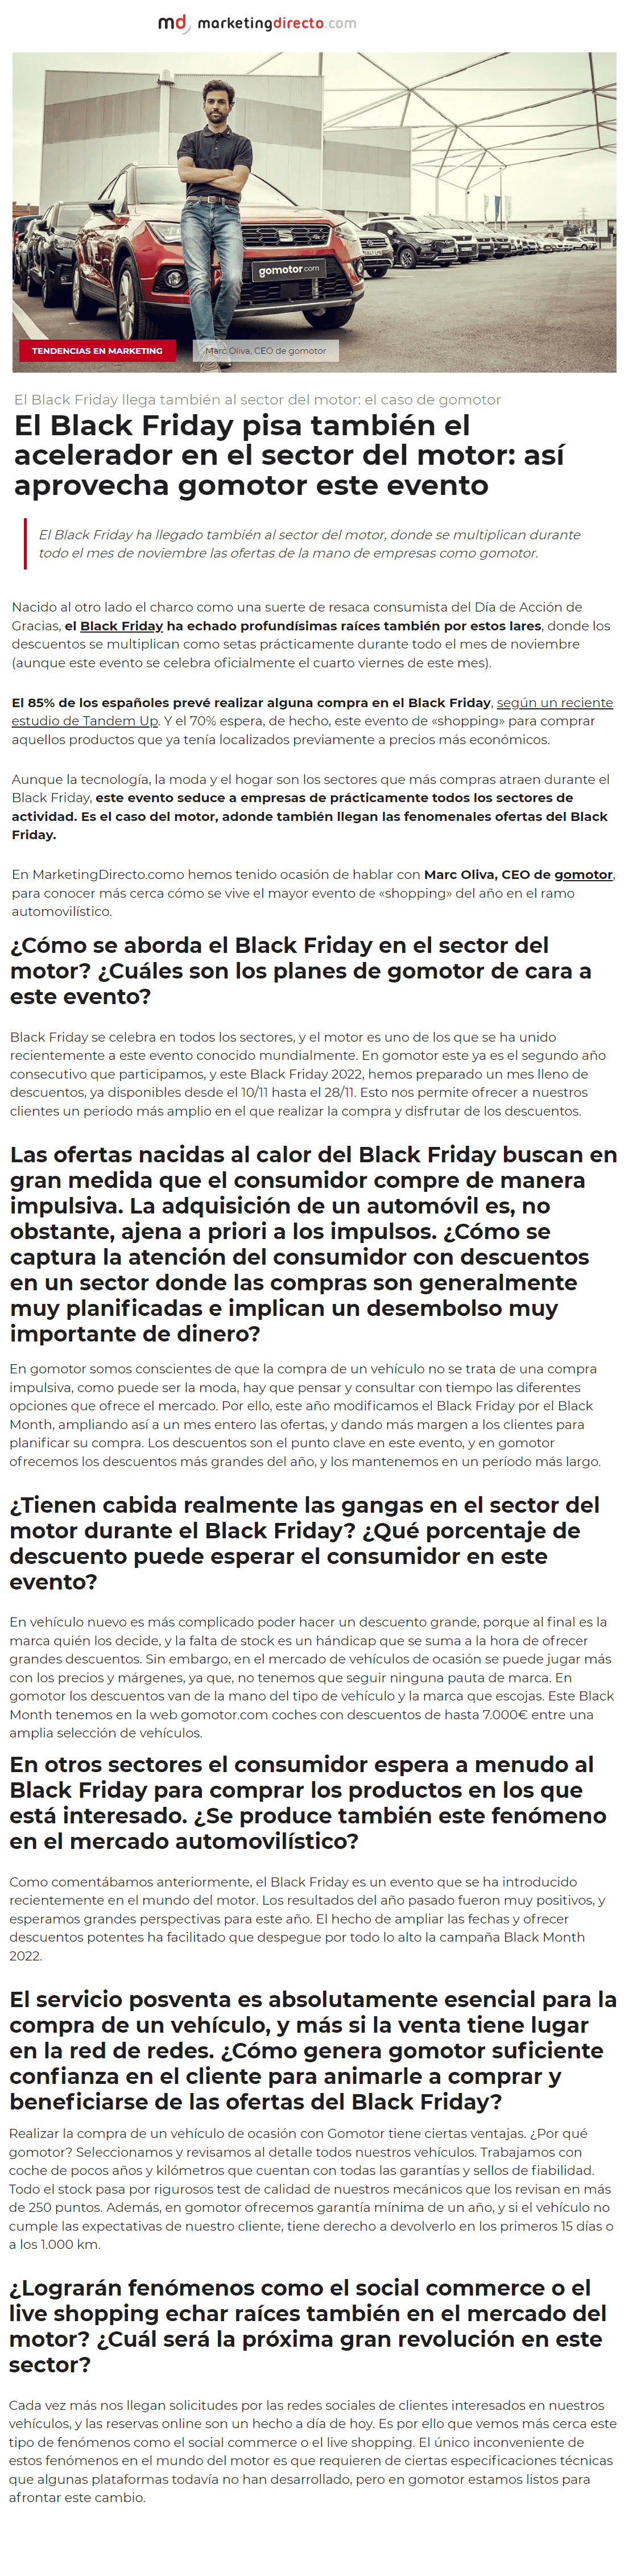 cuerpo_noticia_black_friday.png